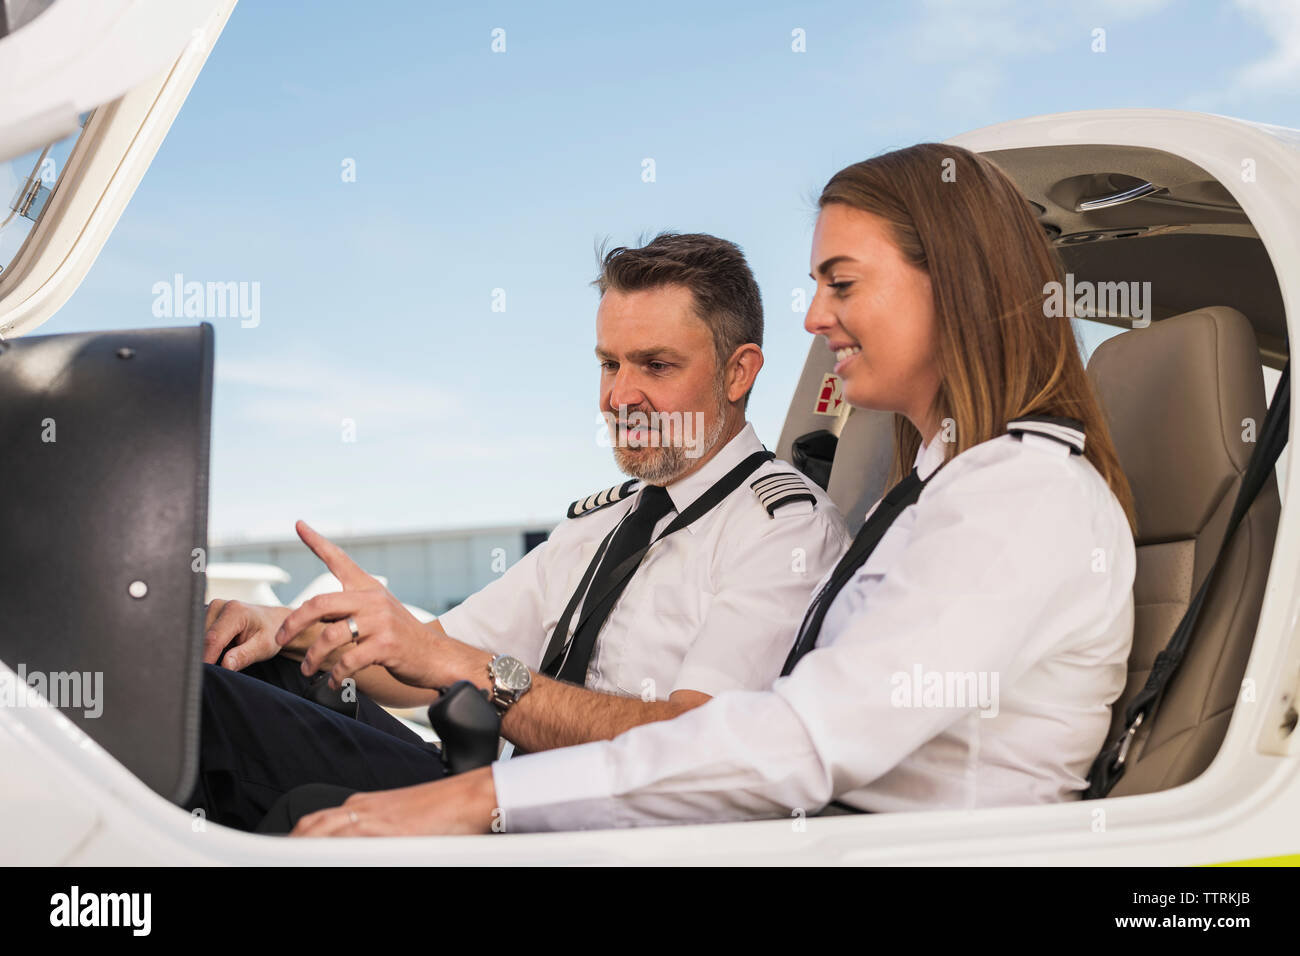 Männliche pilot Lehre weiblicher Auszubildender in Flugzeug gegen den blauen Himmel am Flughafen Stockfoto